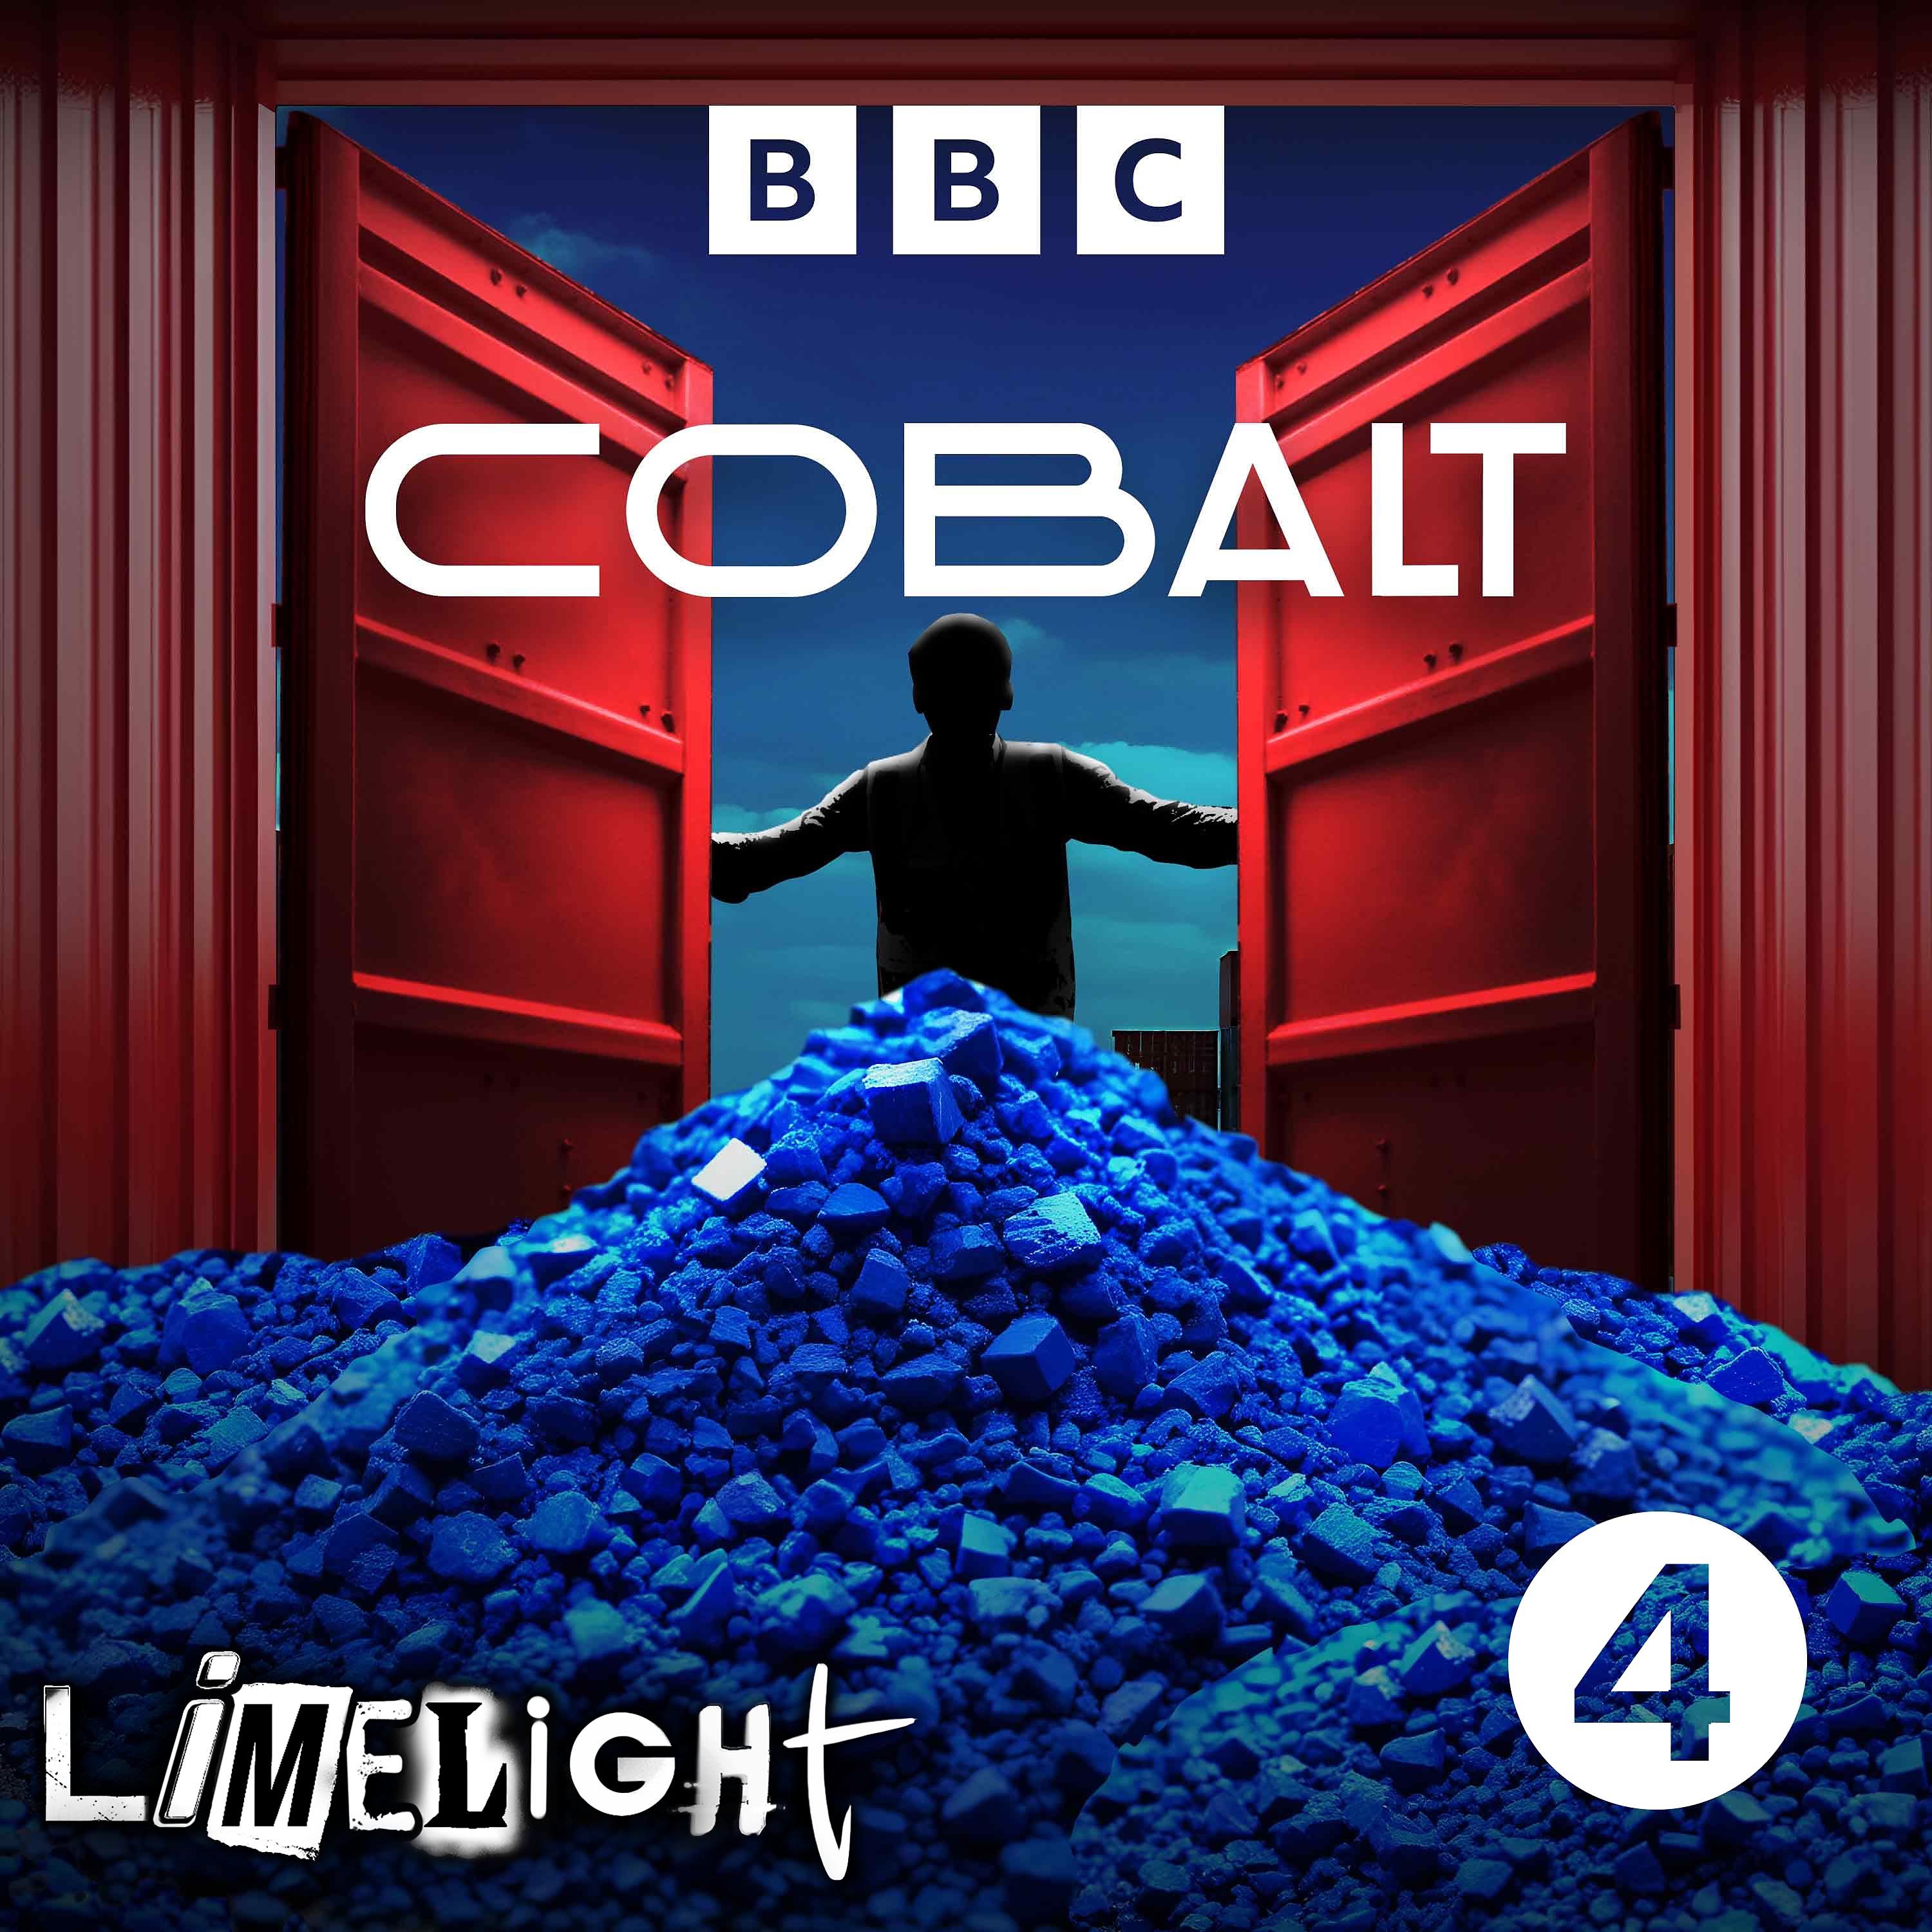 Cobalt - Episode 2